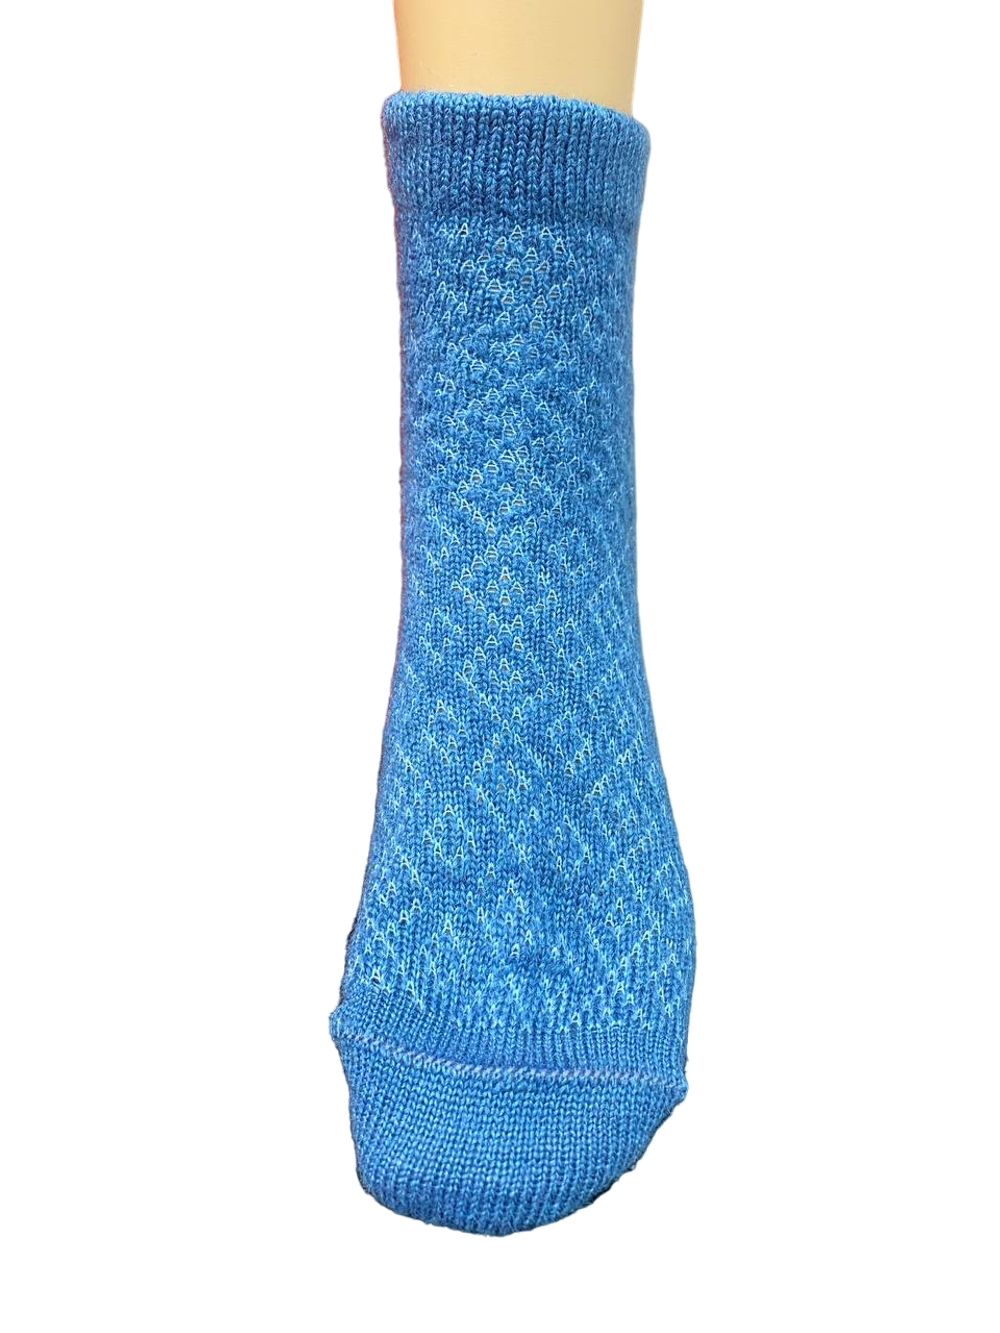 Теплые пуховые носки Н230-11 синий